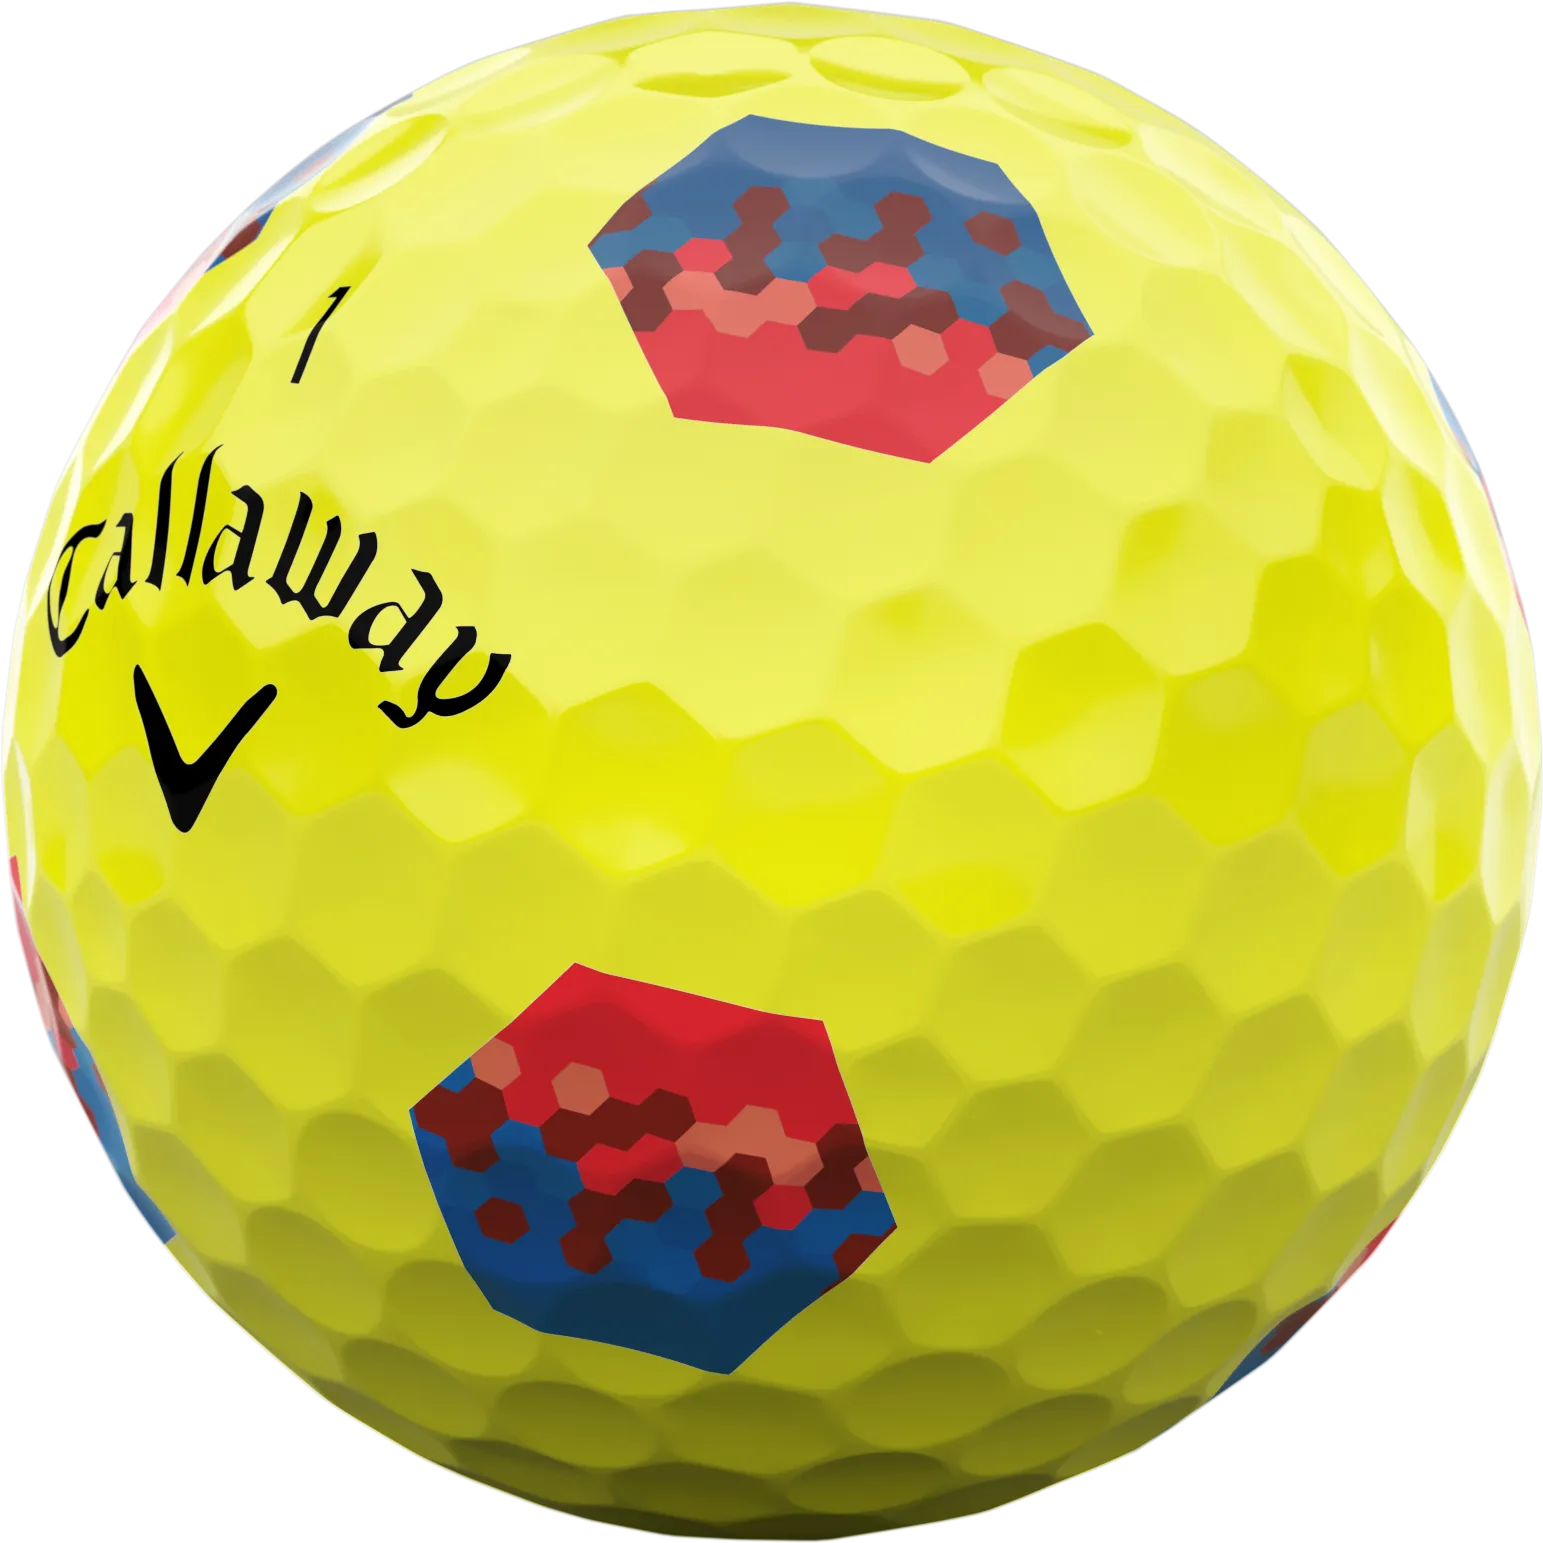 Callaway Chrome Soft TruTrack Golfbälle, gelb